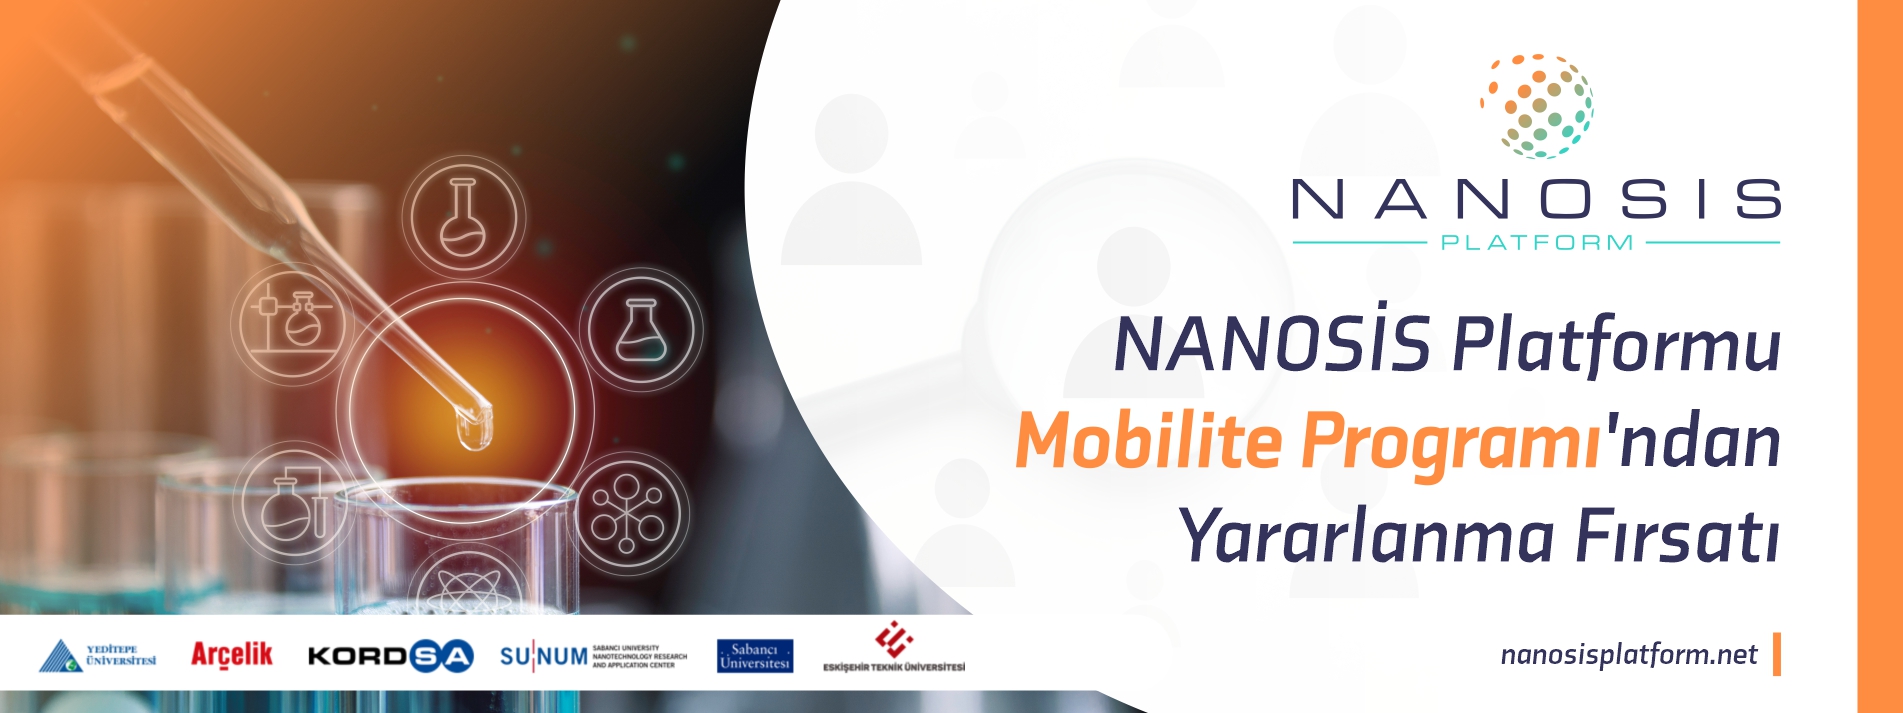 NANOSİS Platformu Mobilite Programı'ndan Yararlanma Fırsatı